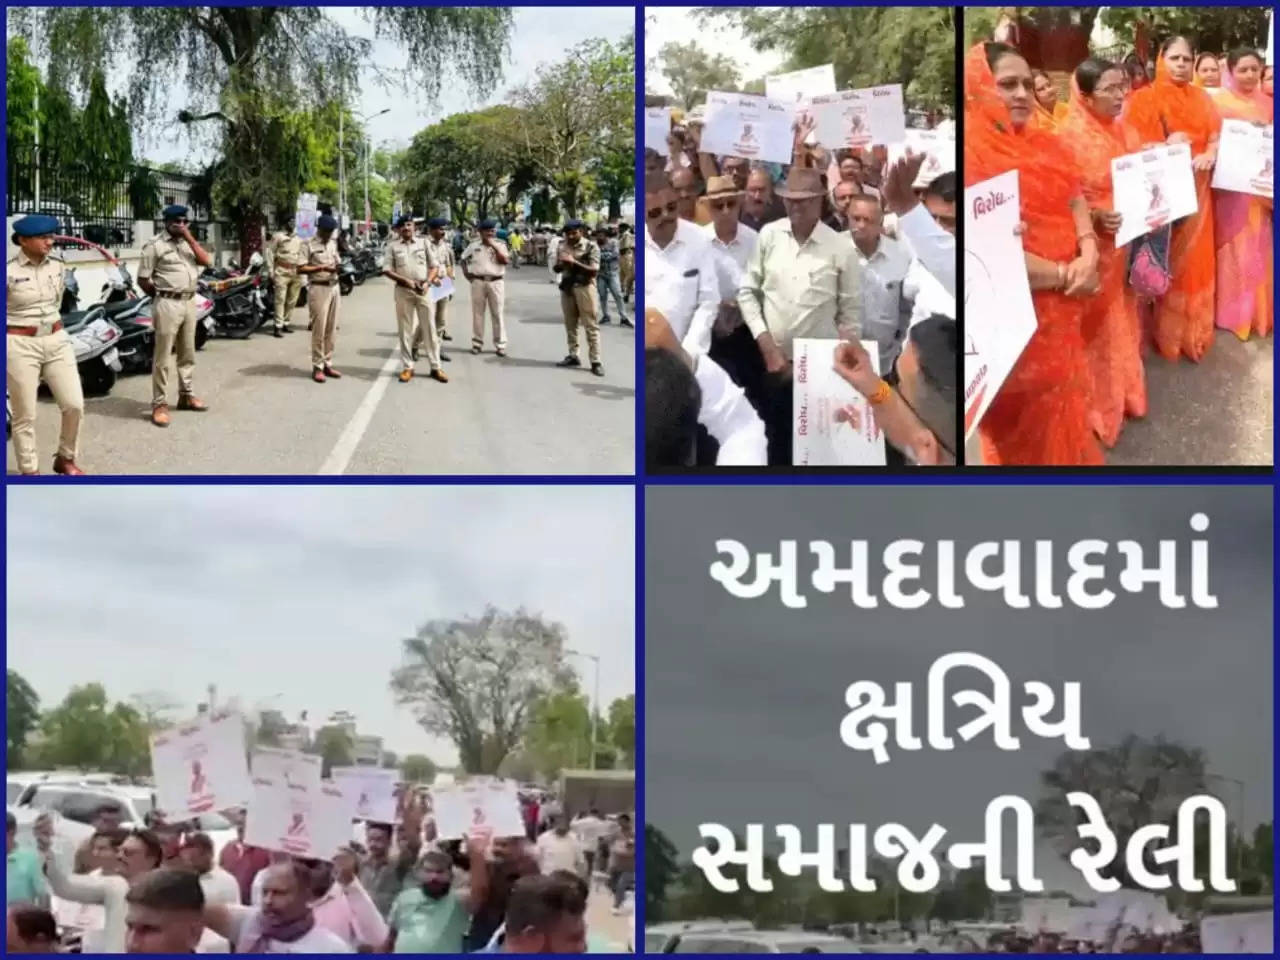 વિરોધ@ગુજરાત: અમદાવાદમાં ક્ષત્રિય સમાજ દ્વ્રારા રેલી કાઢવામાં આવી, 200થી વધુ પોલીસ કર્મચારીઓ બંદોબસ્તમાં